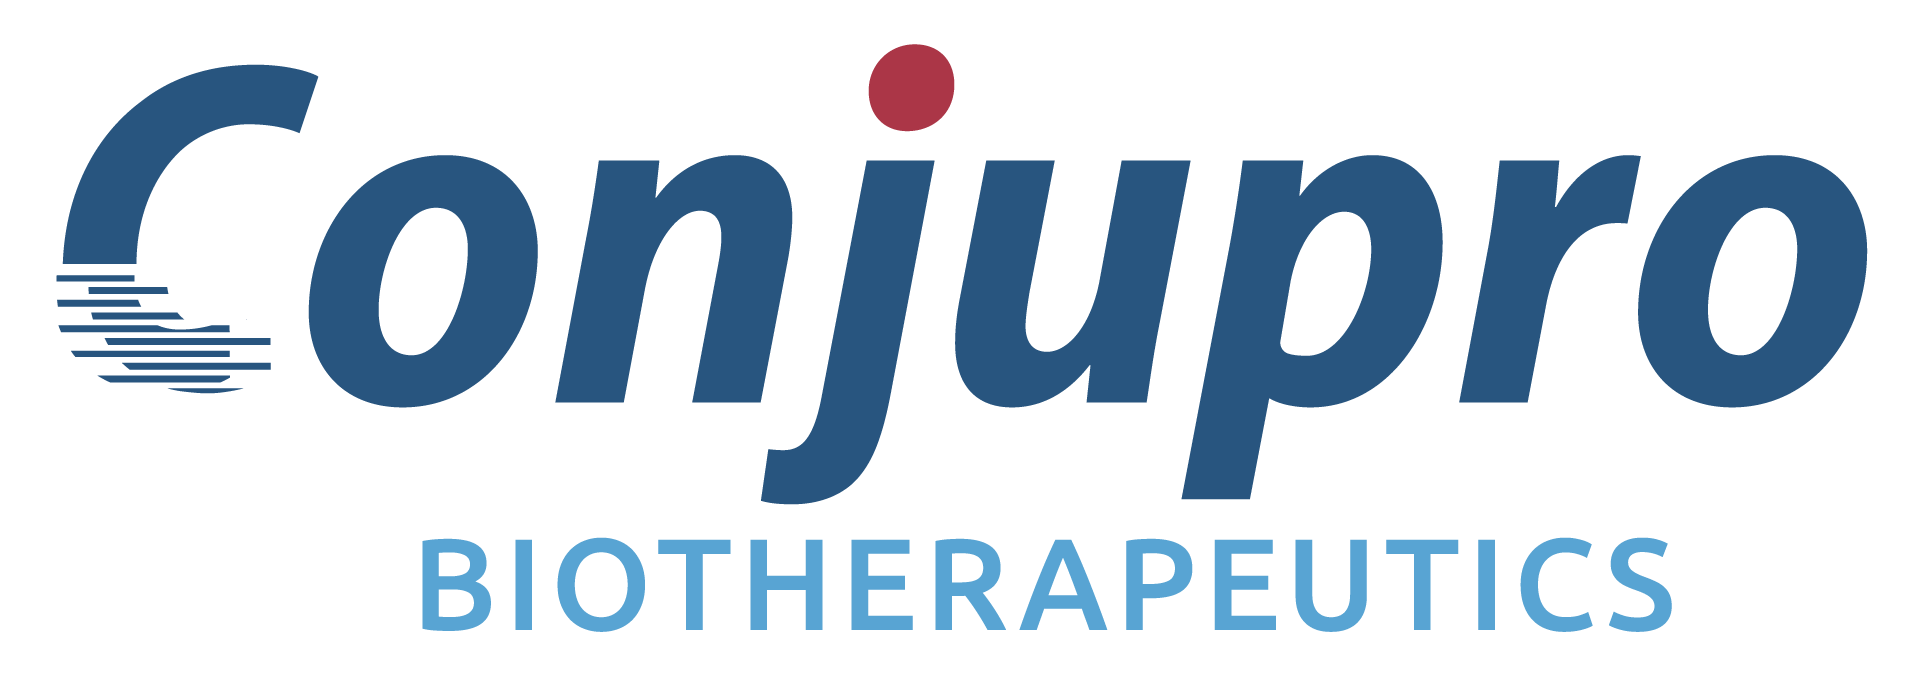 Conjupro Biotherapeutics, Inc.